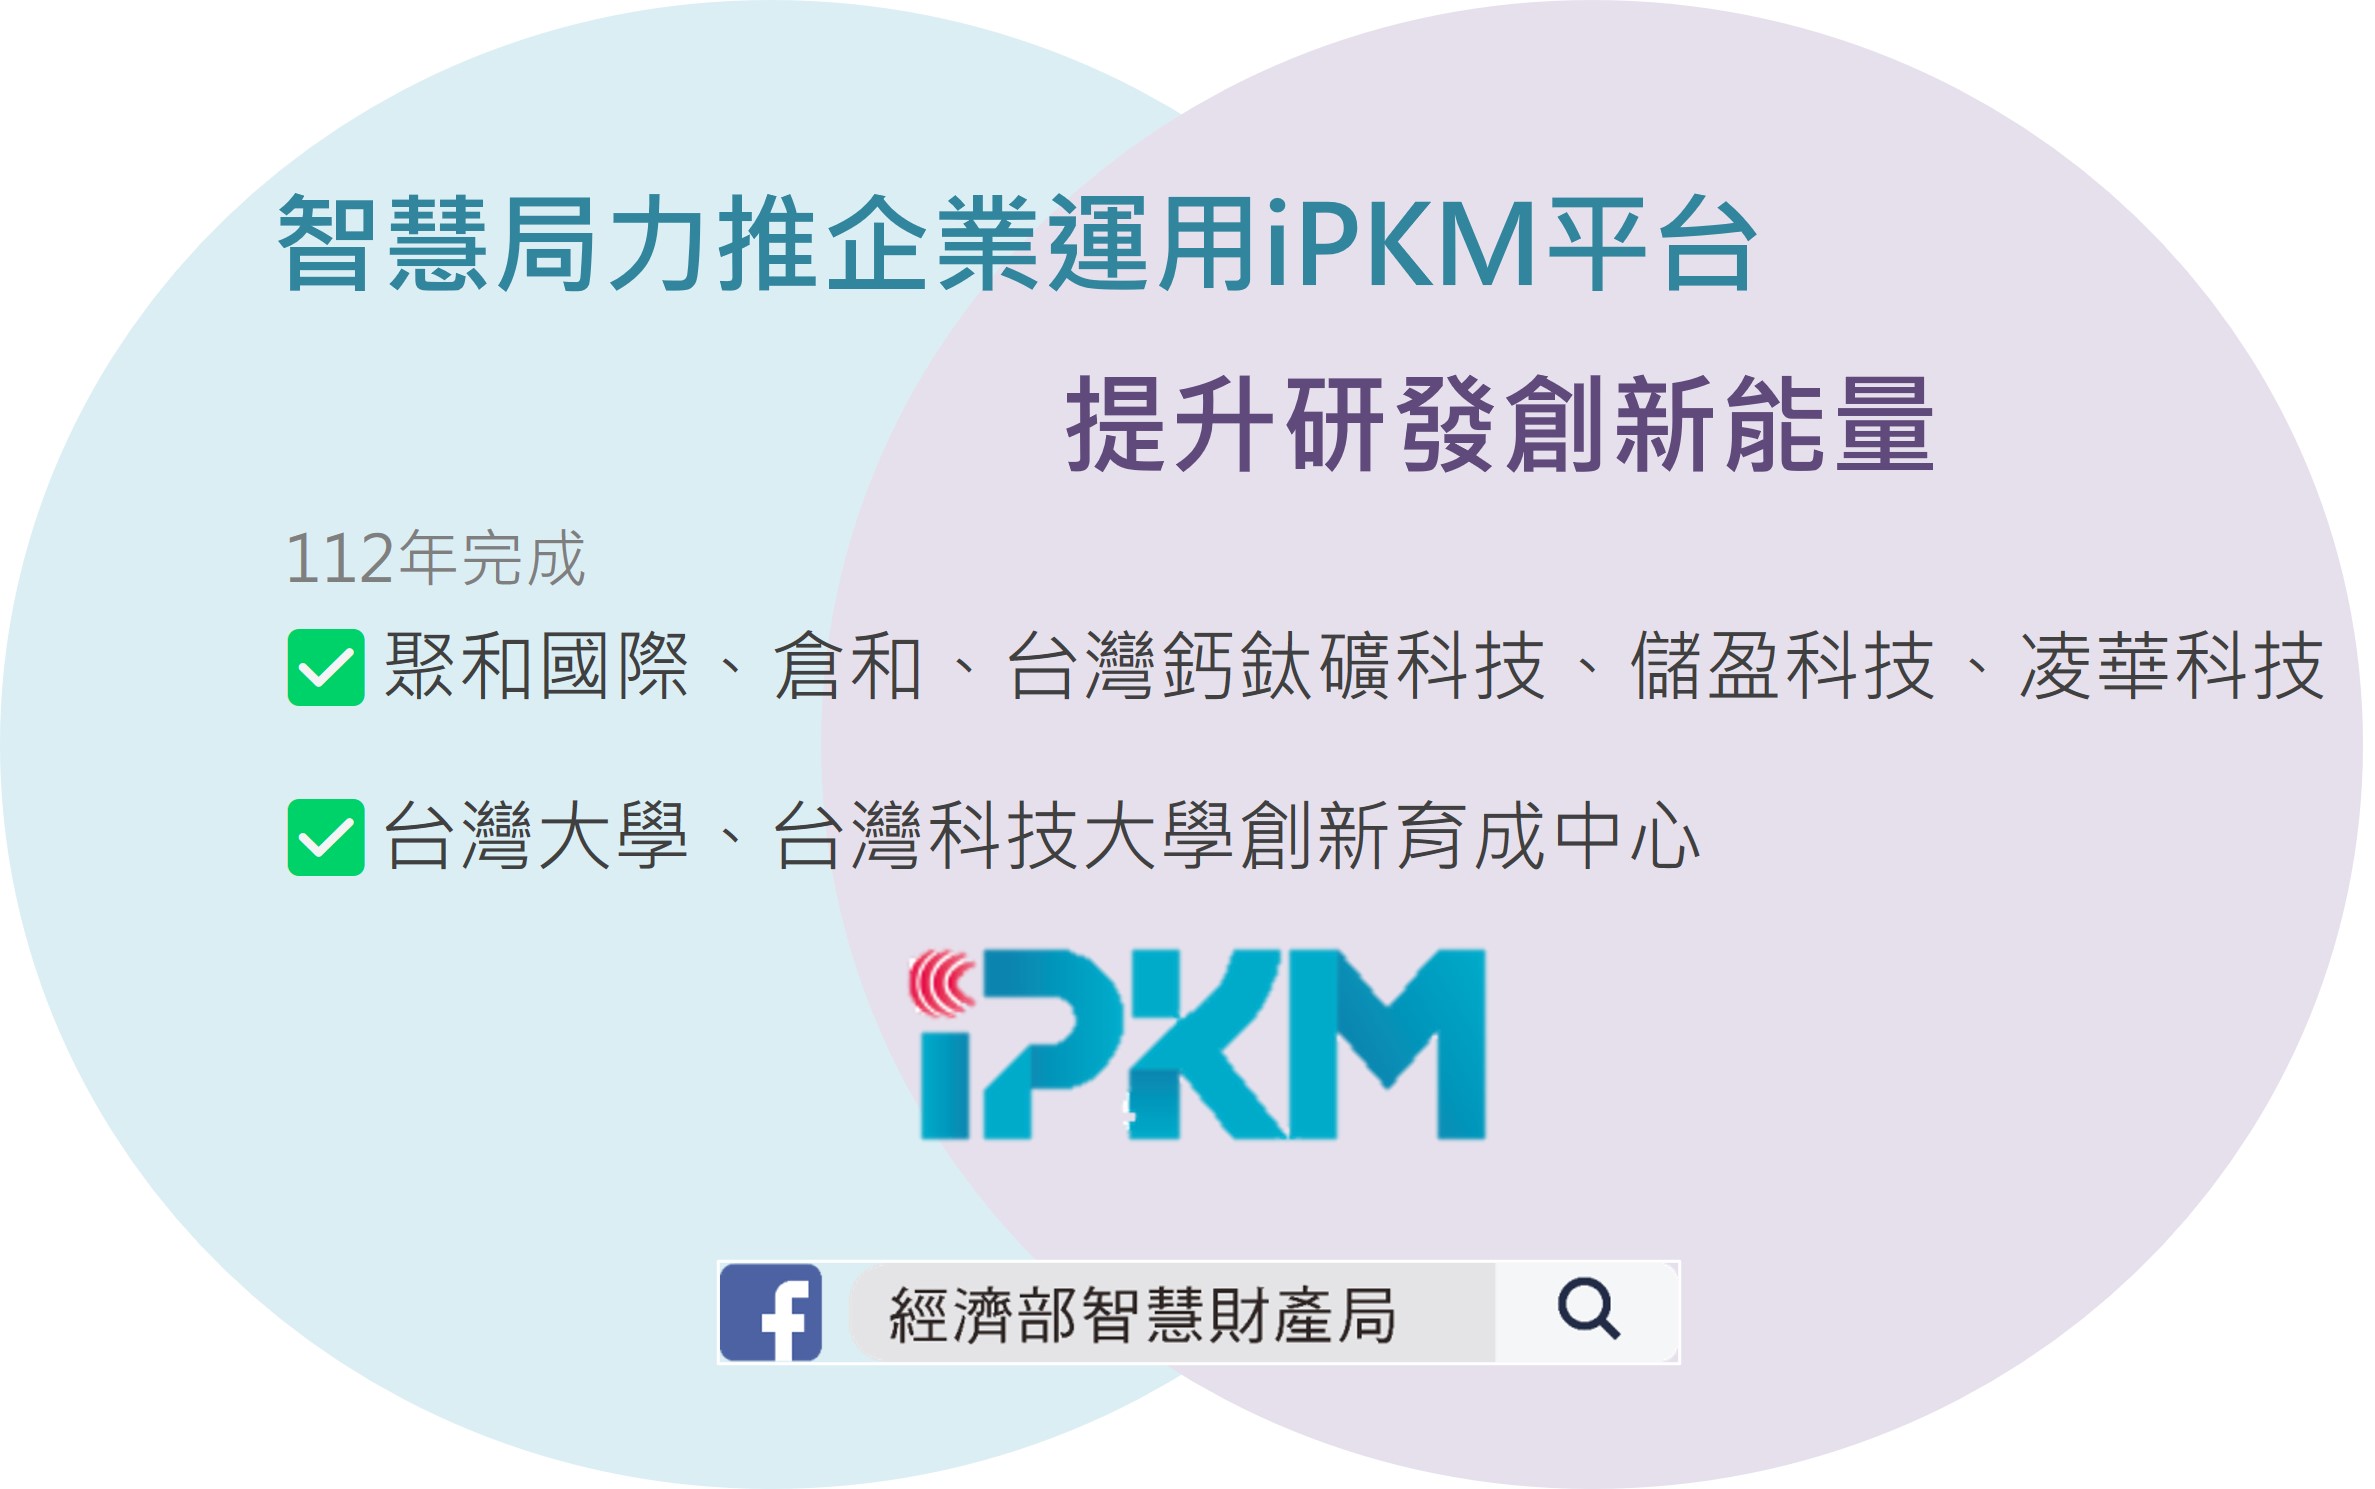 智慧局力推企業運用iPKM平台